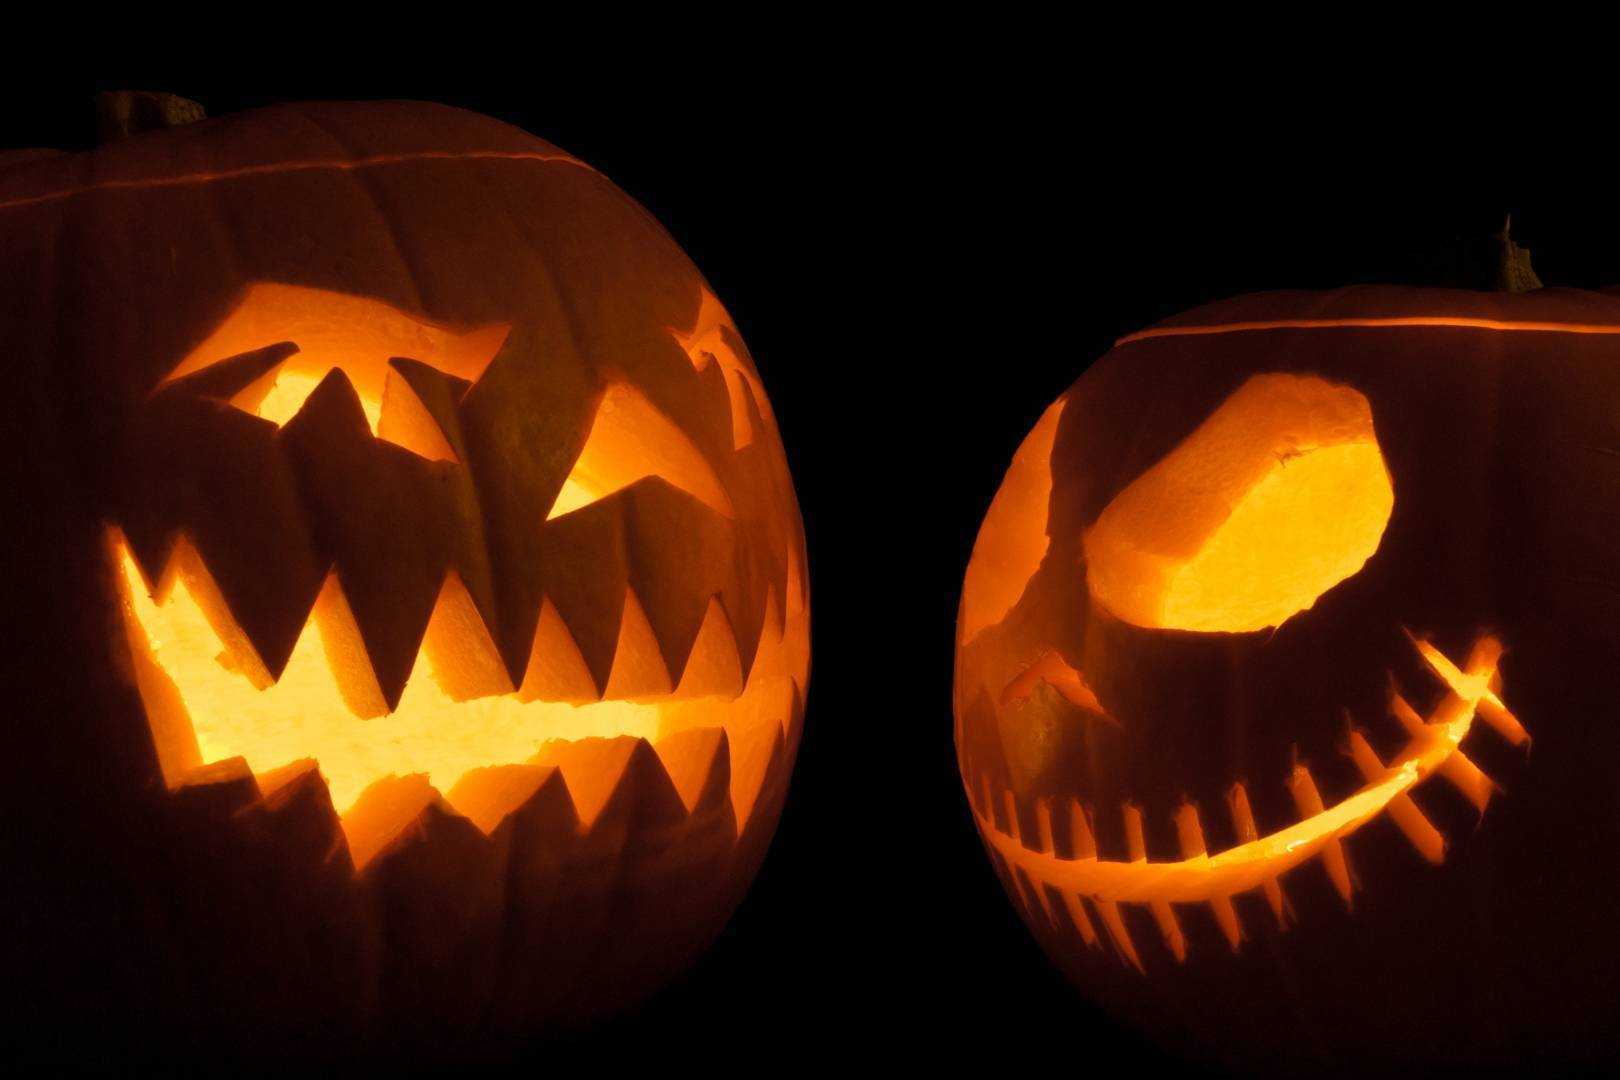 Как одеться на хэллоуин: страшные маски, костюмы для парней и девушек. как сделать тыкву на хэллоуин, из чего сделать кровь, как украсить комнату, дом?